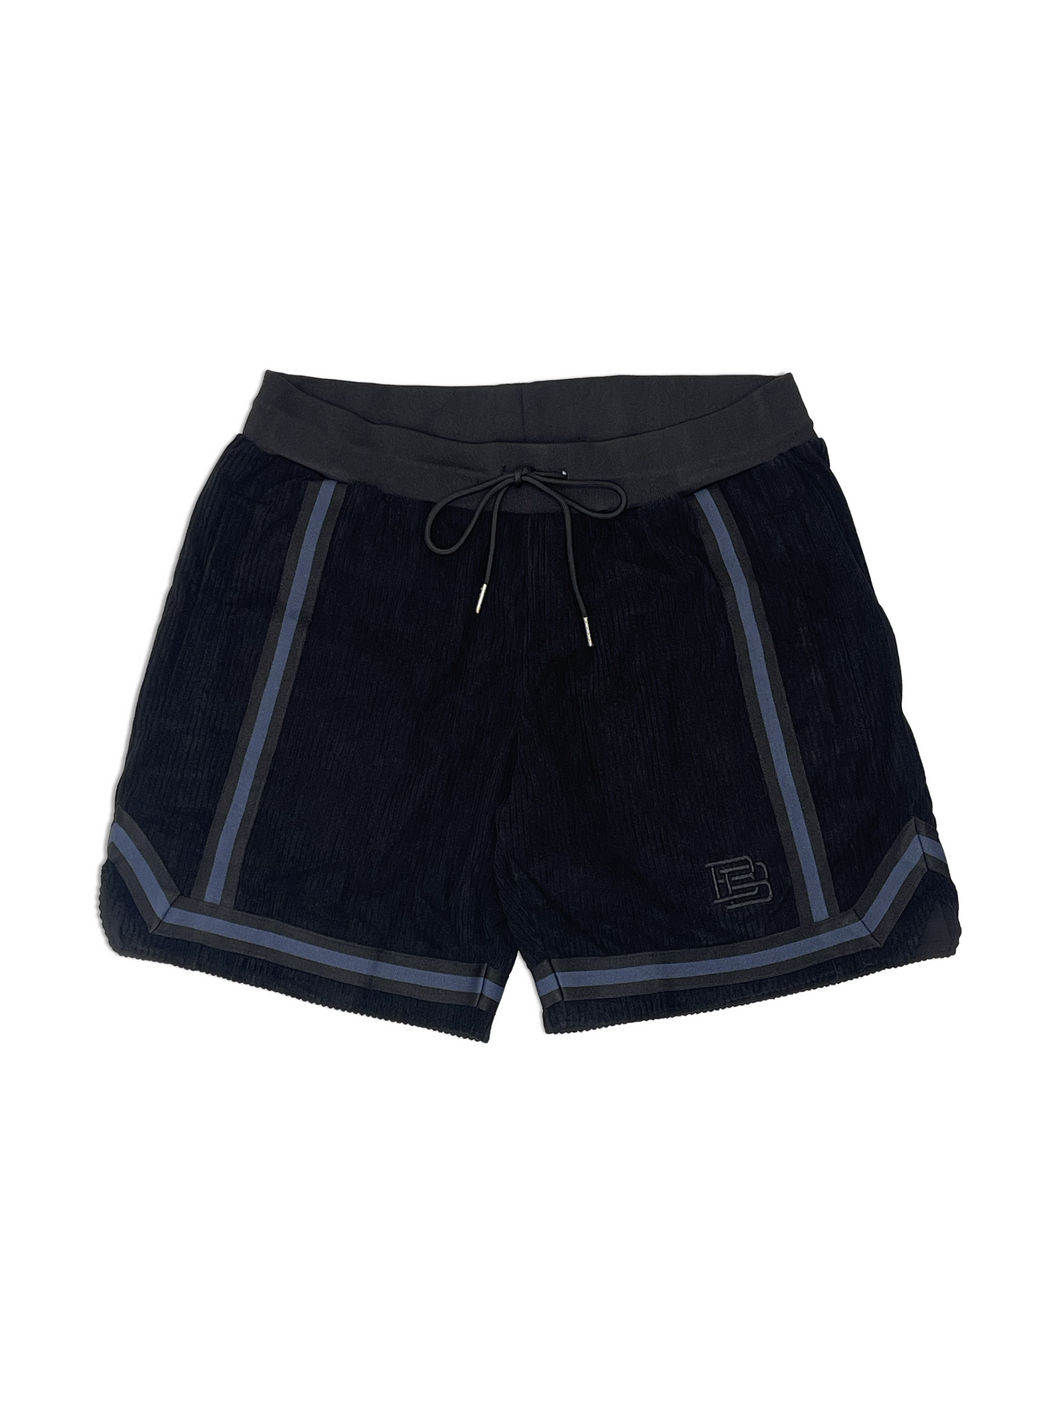 Corduroy Shorts “Black/Navy”